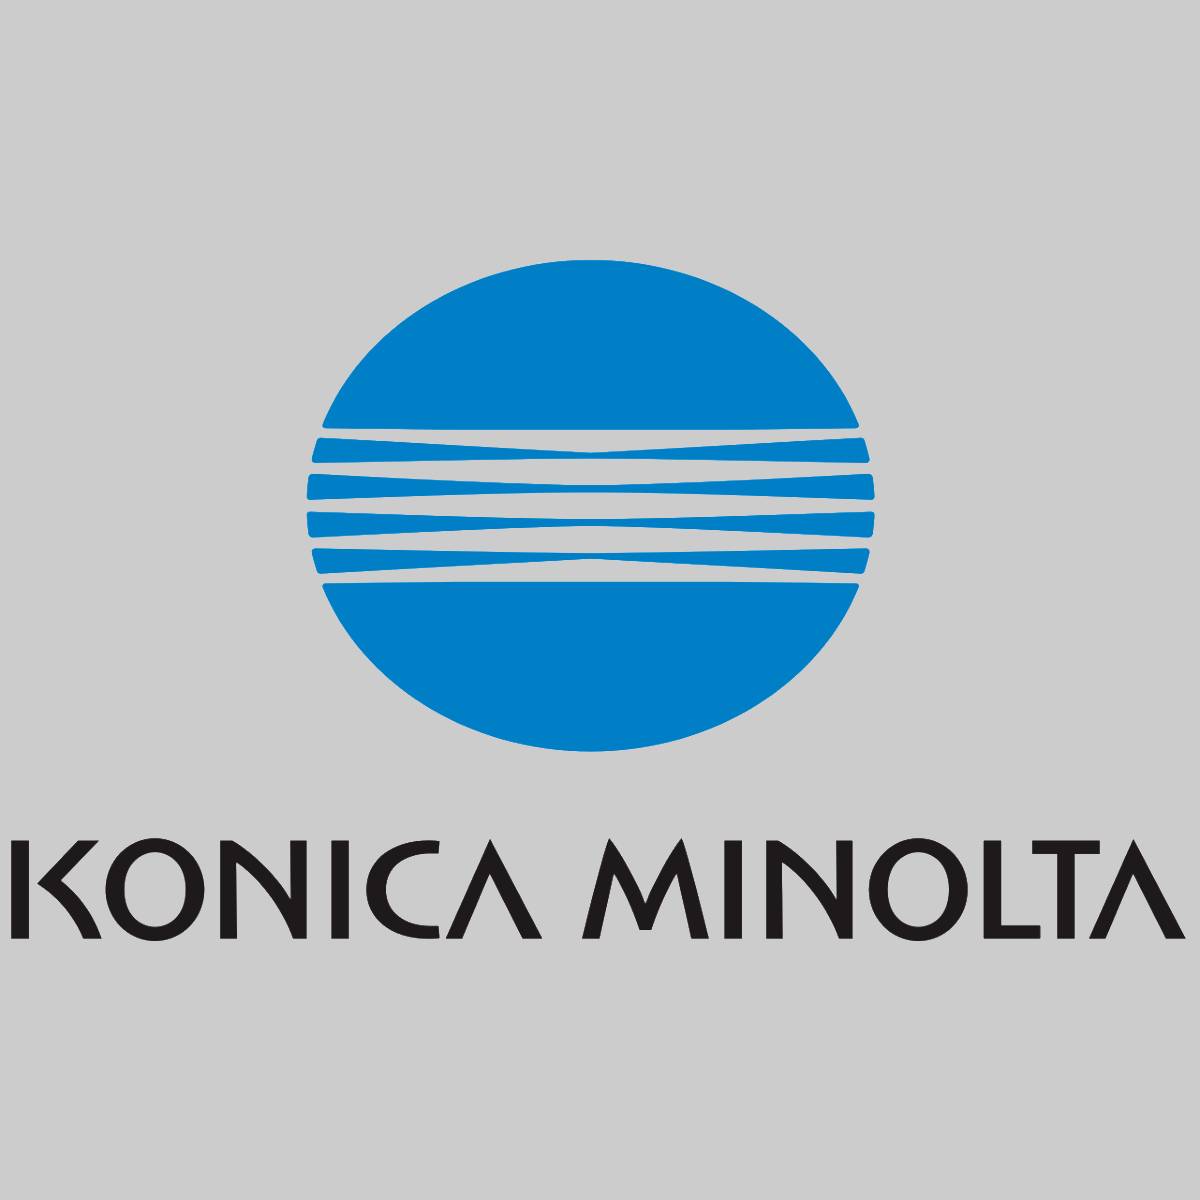 "Original Konica Minolta Cleaning Blade A0G6535000 für Bizhub 951 1051 1200 1250